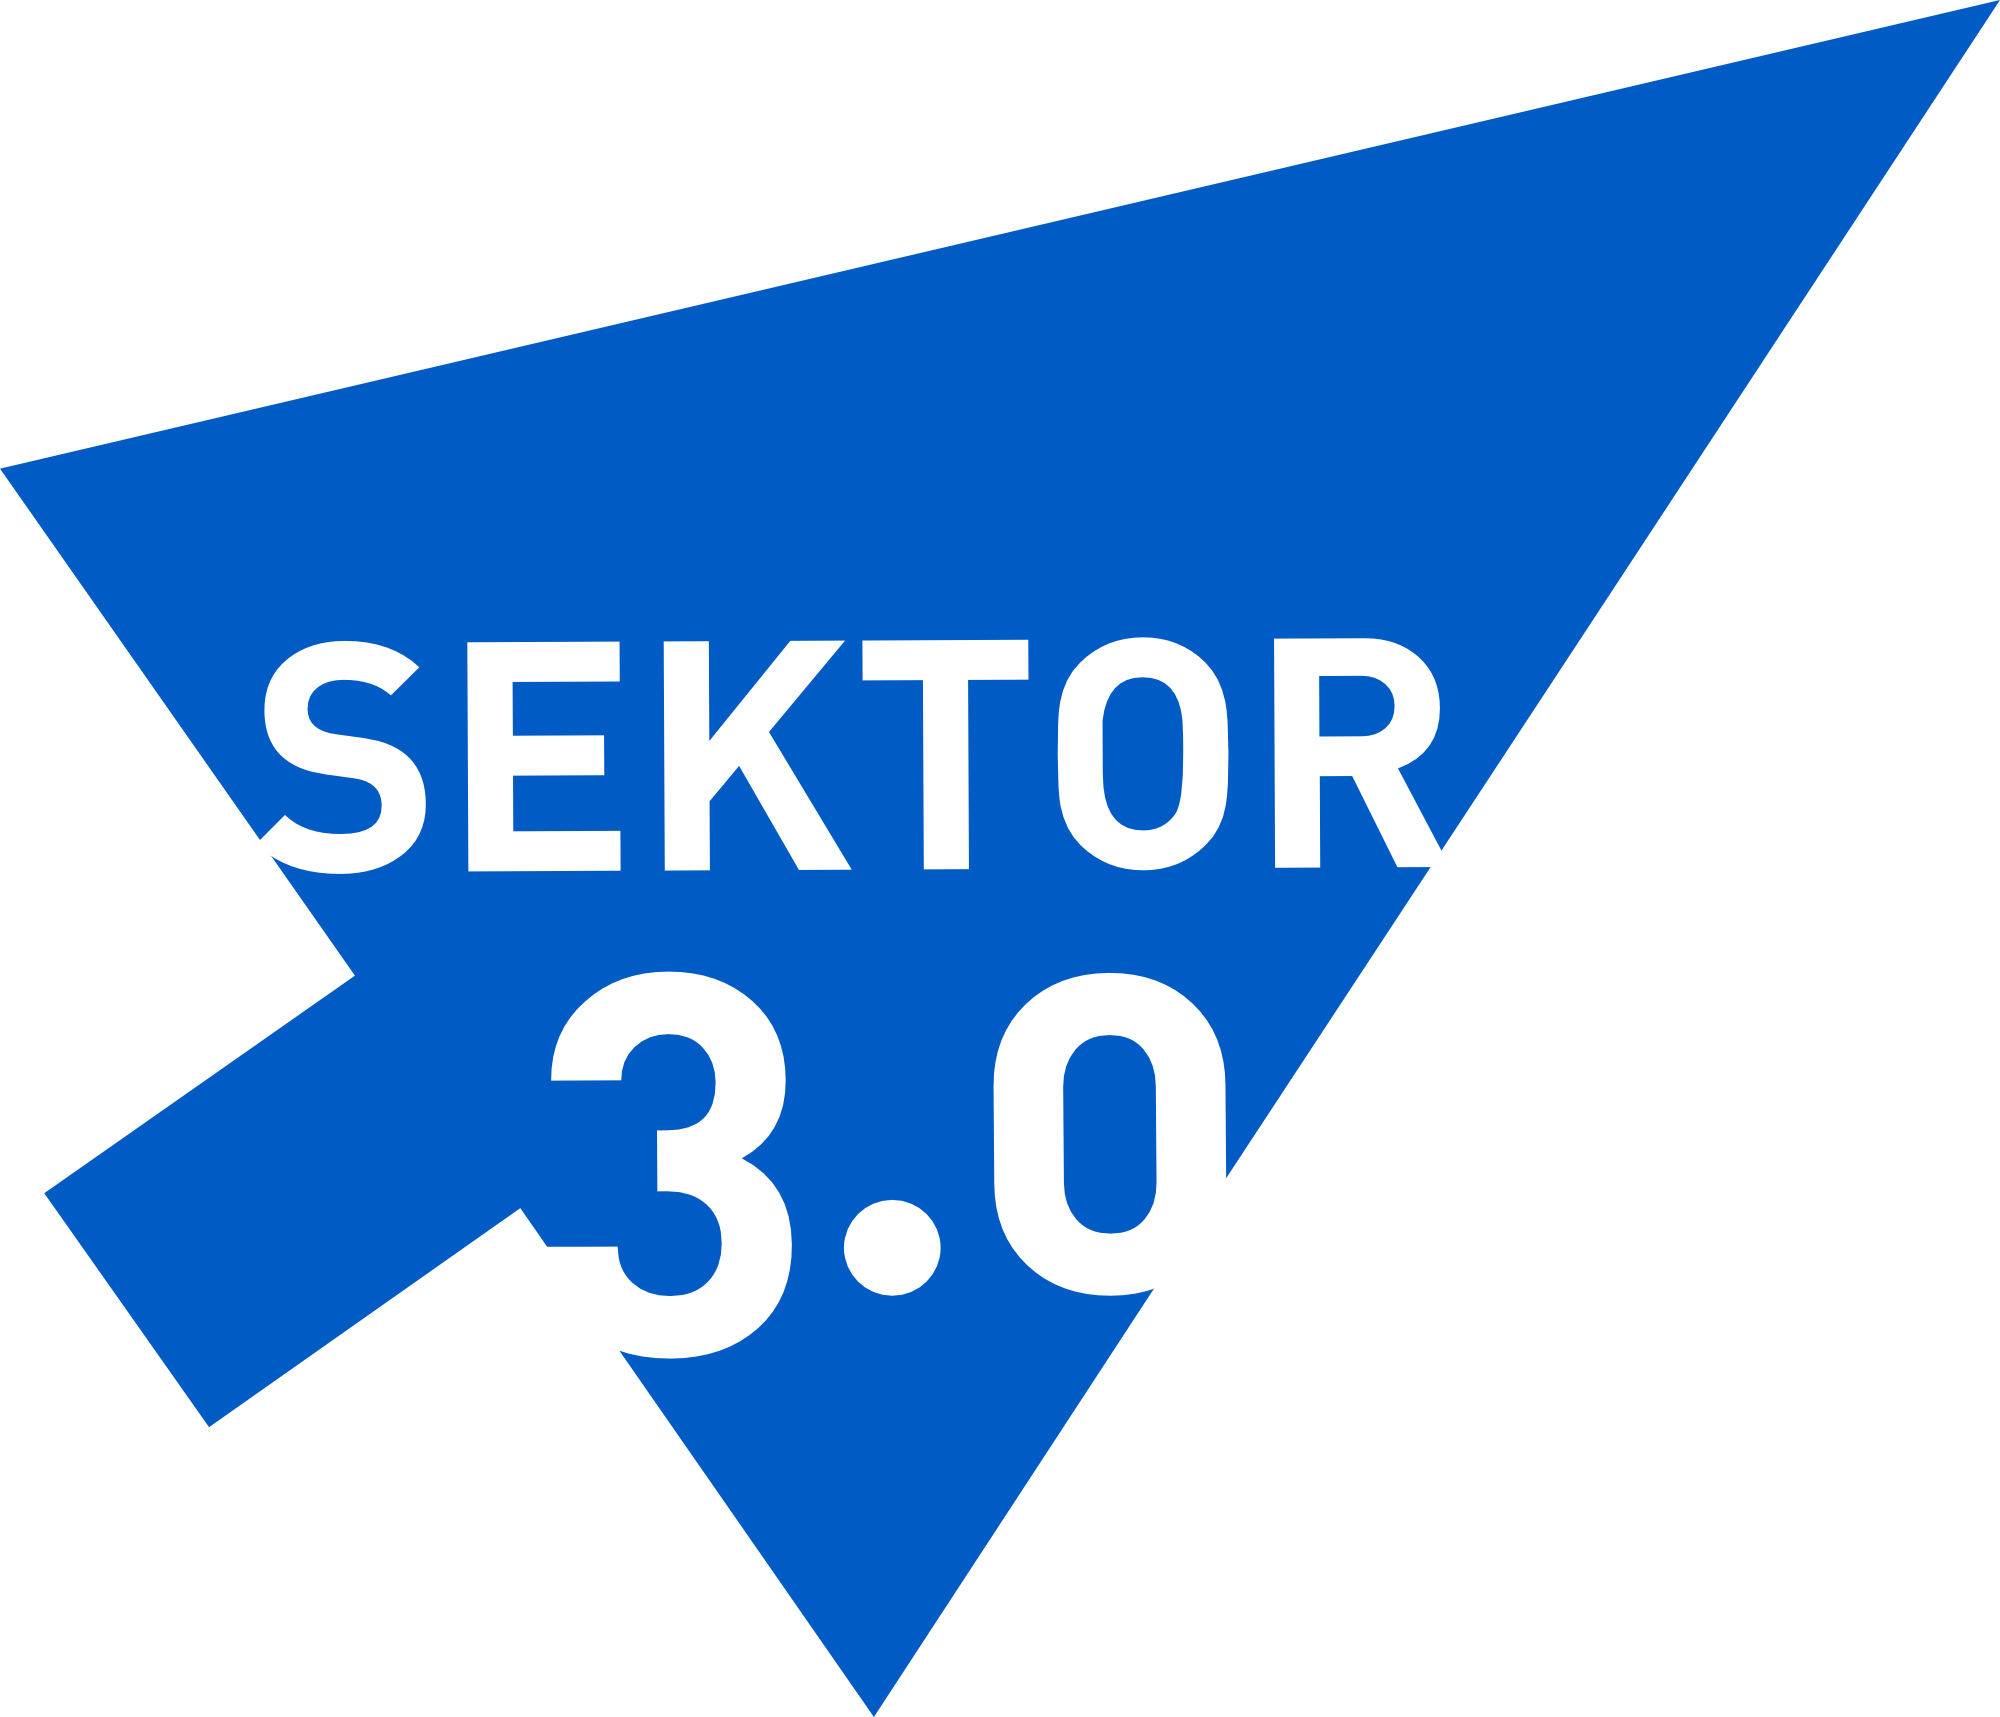 Sektor 3.0 – logo